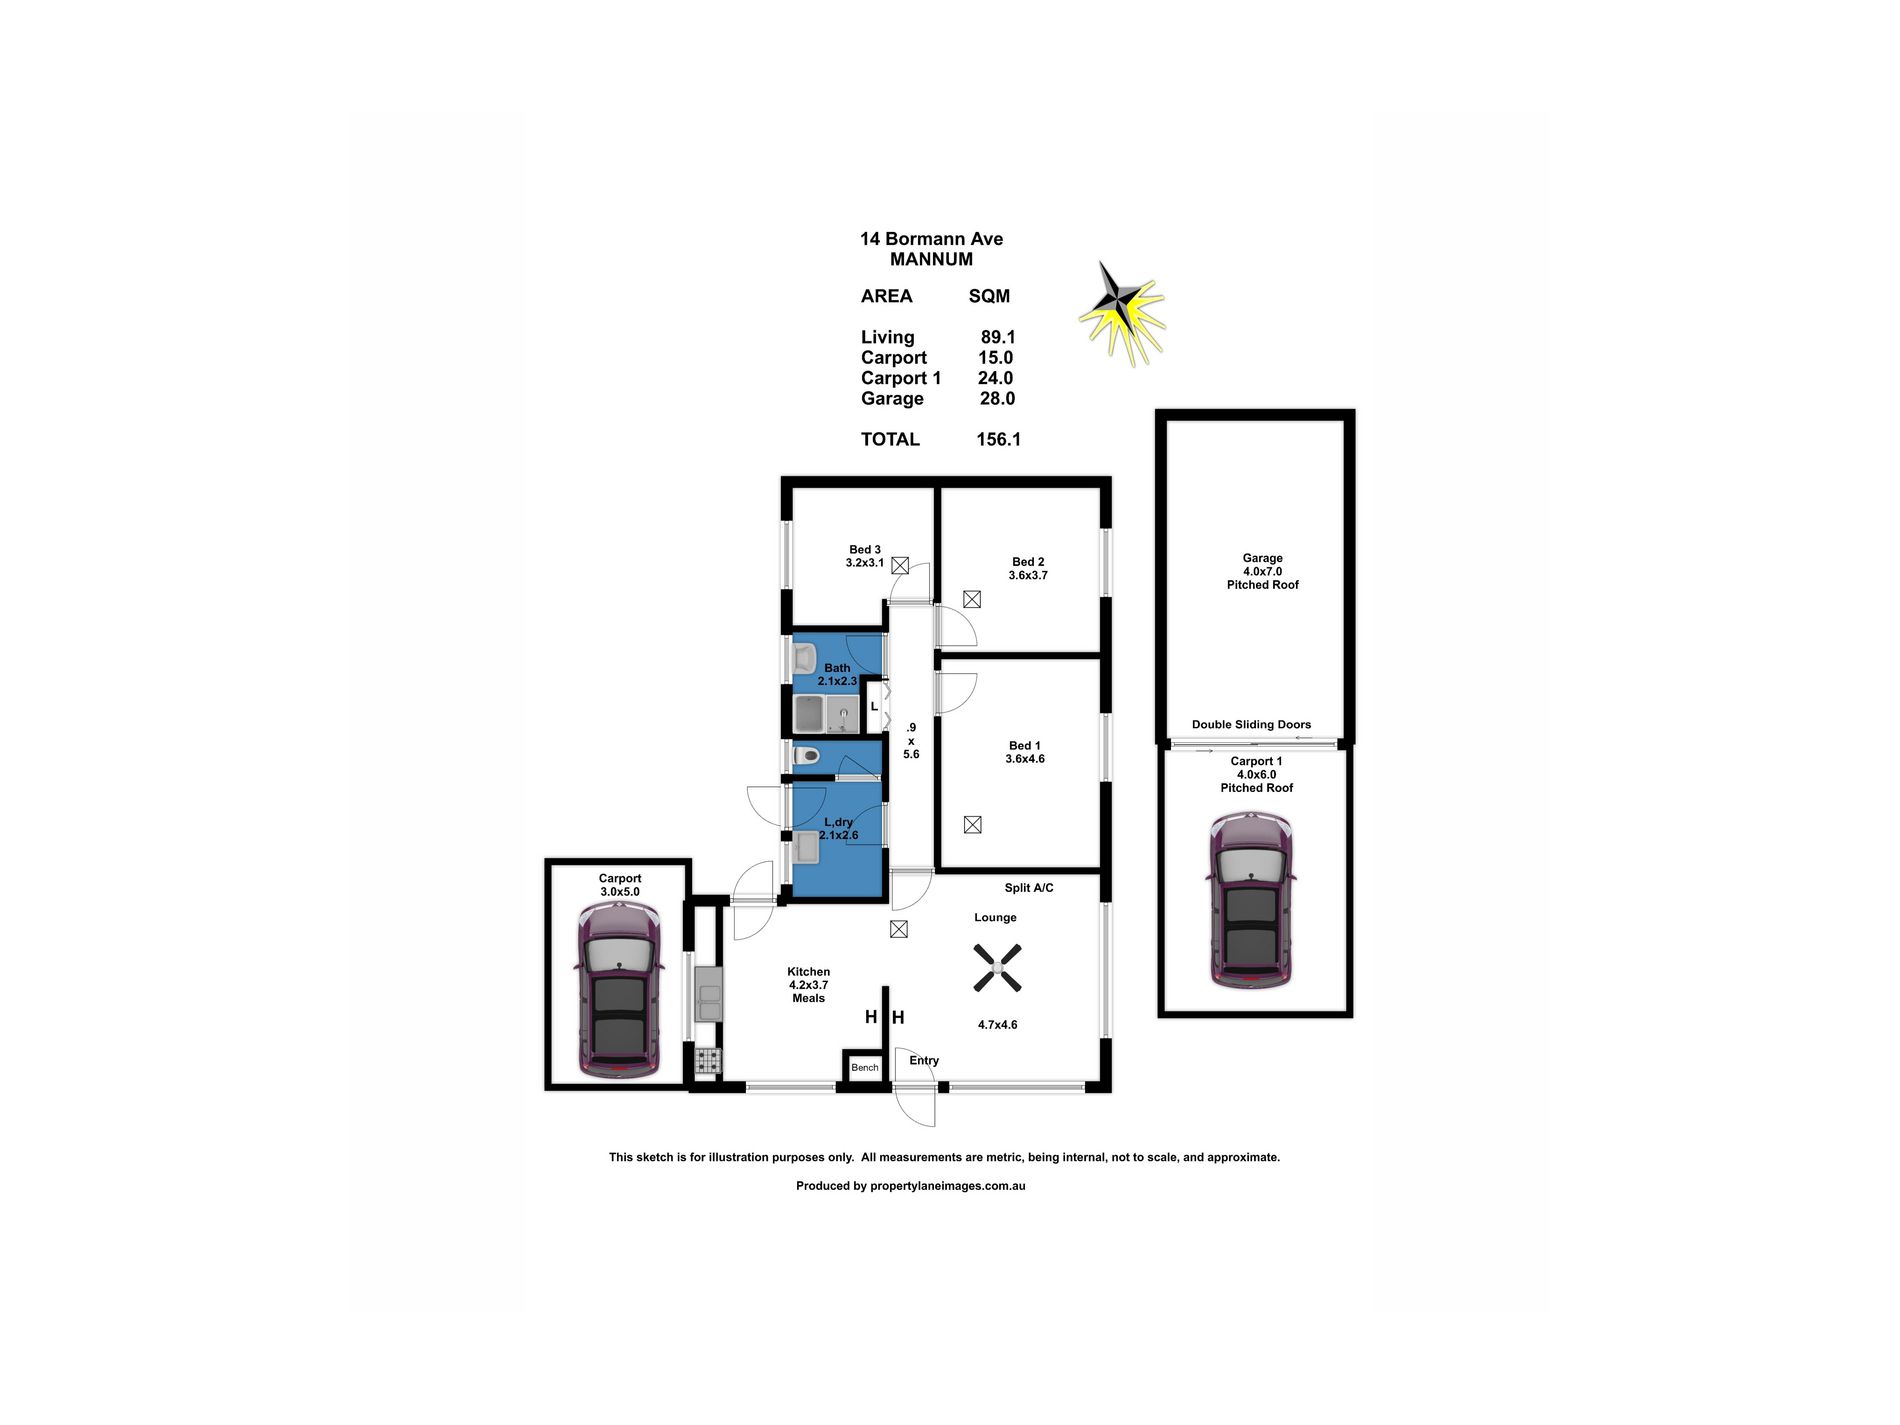 14 Bormann Avenue, Mannum Floor Plan